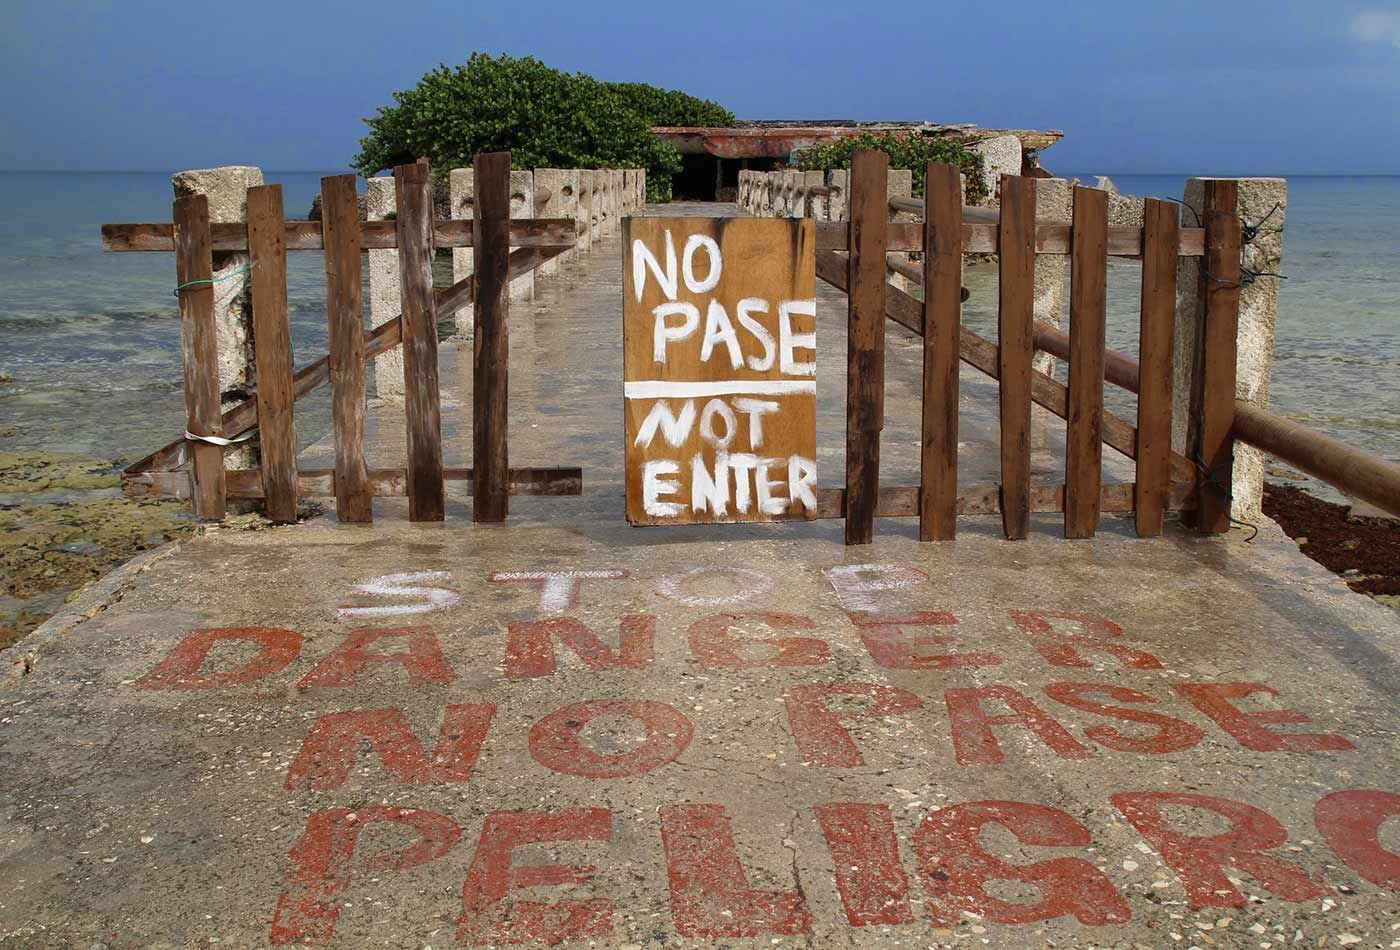 Do not enter.